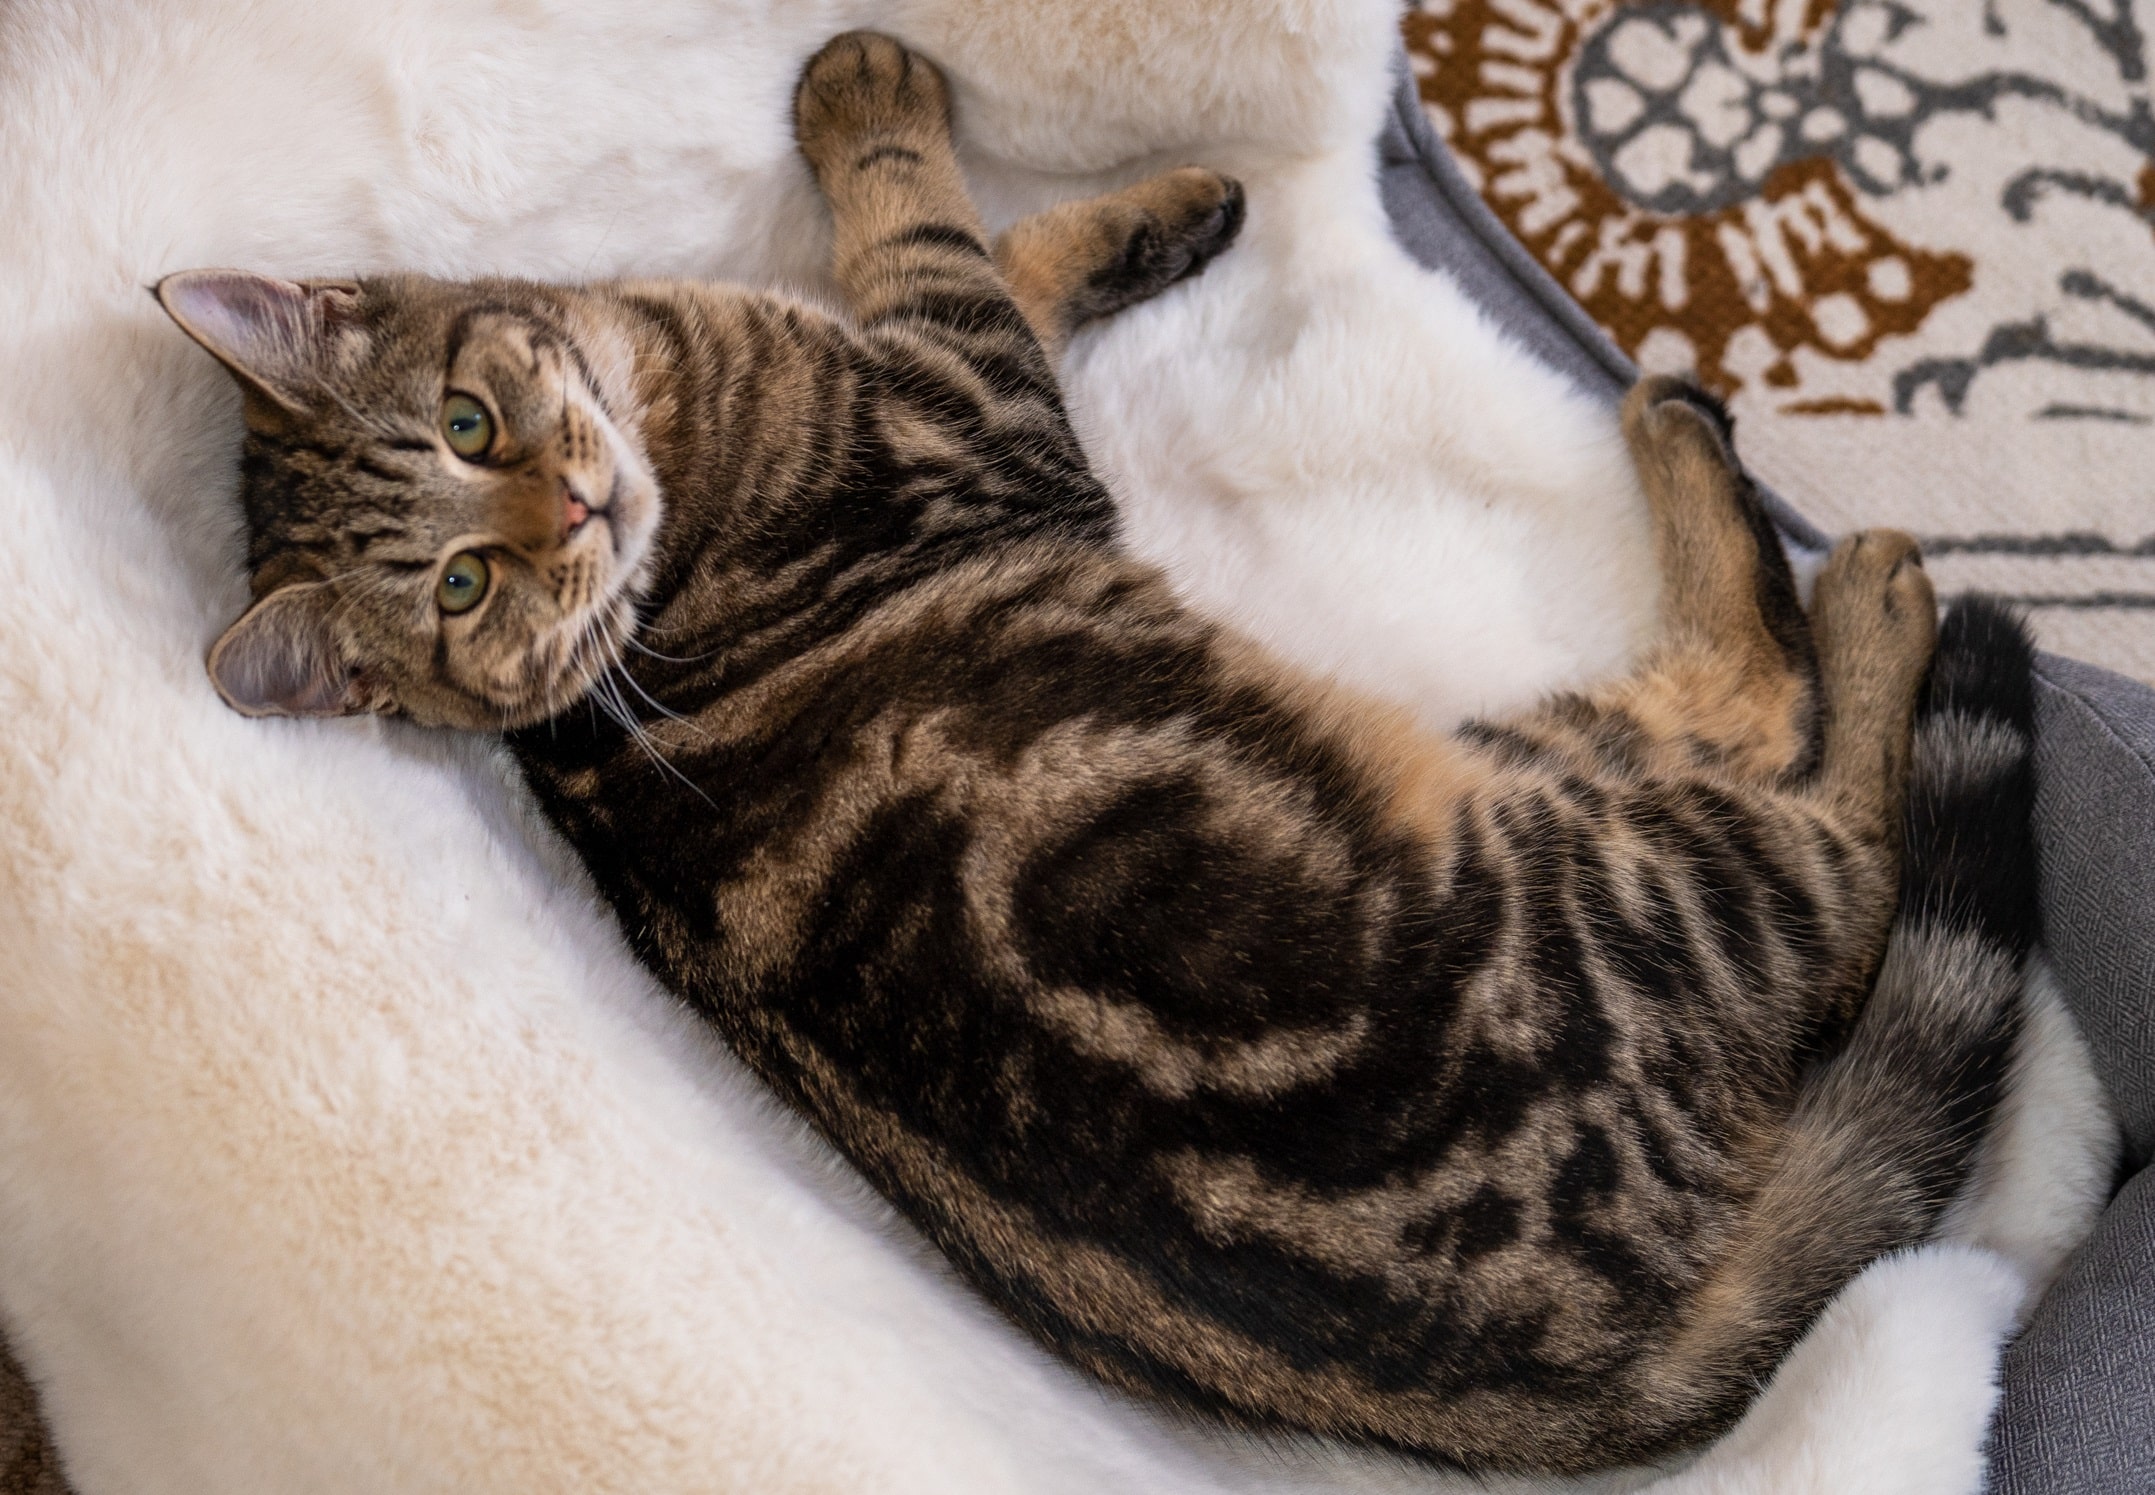 https://blog.omlet.co.uk/wp-content/uploads/sites/9/2021/06/Cat-lying-on-Omlet-Luxury-Faux-Sheepskin-Cat-Blanket-on-top-of-bed.jpg